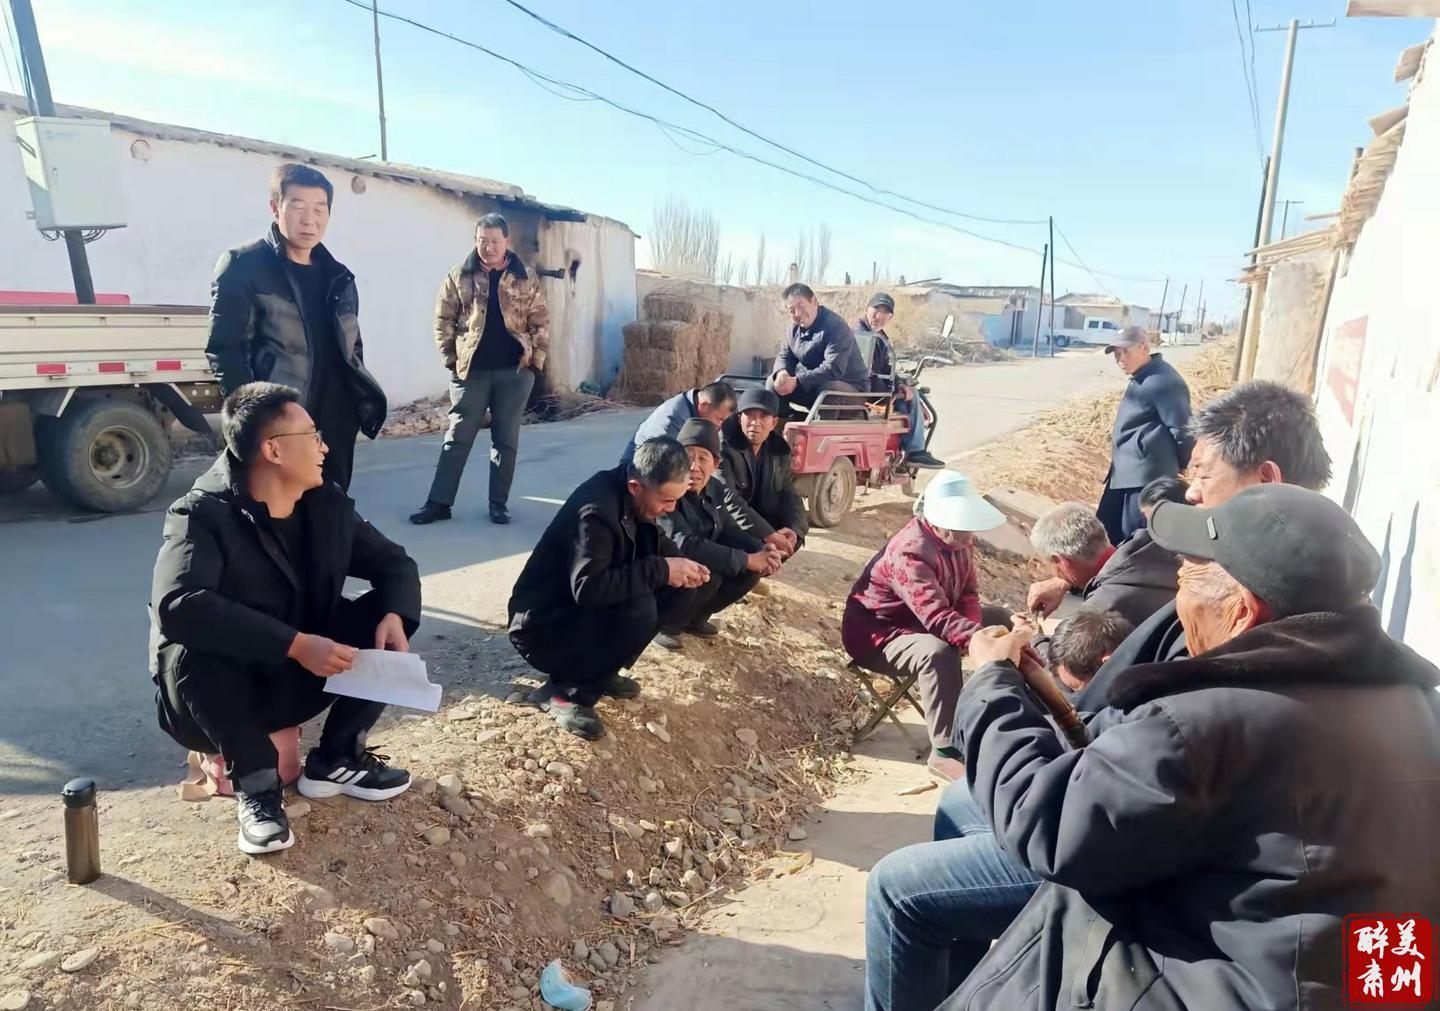 村干部化身“宣传员” 肃州一地冬季集中教育走进村组